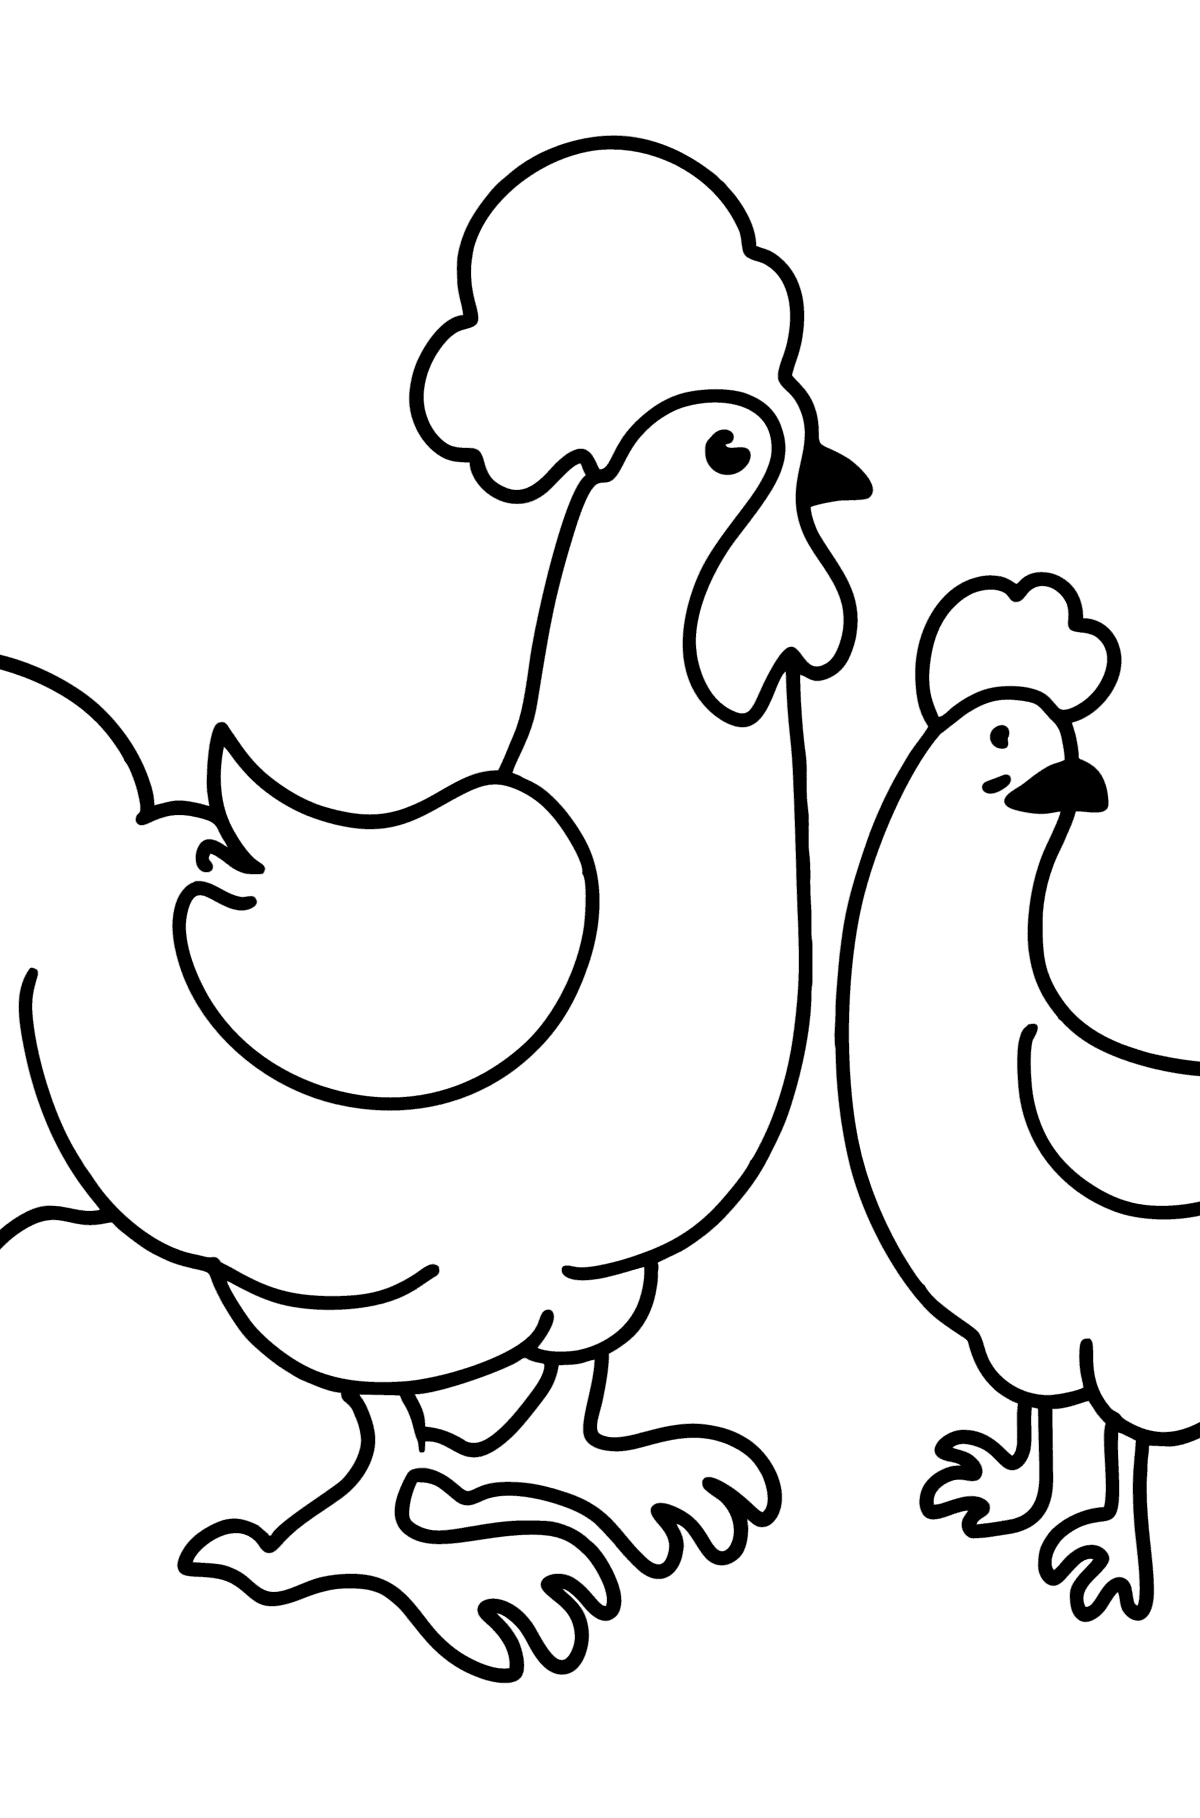 desenho de frango para colorir para crianças 5162979 Vetor no Vecteezy